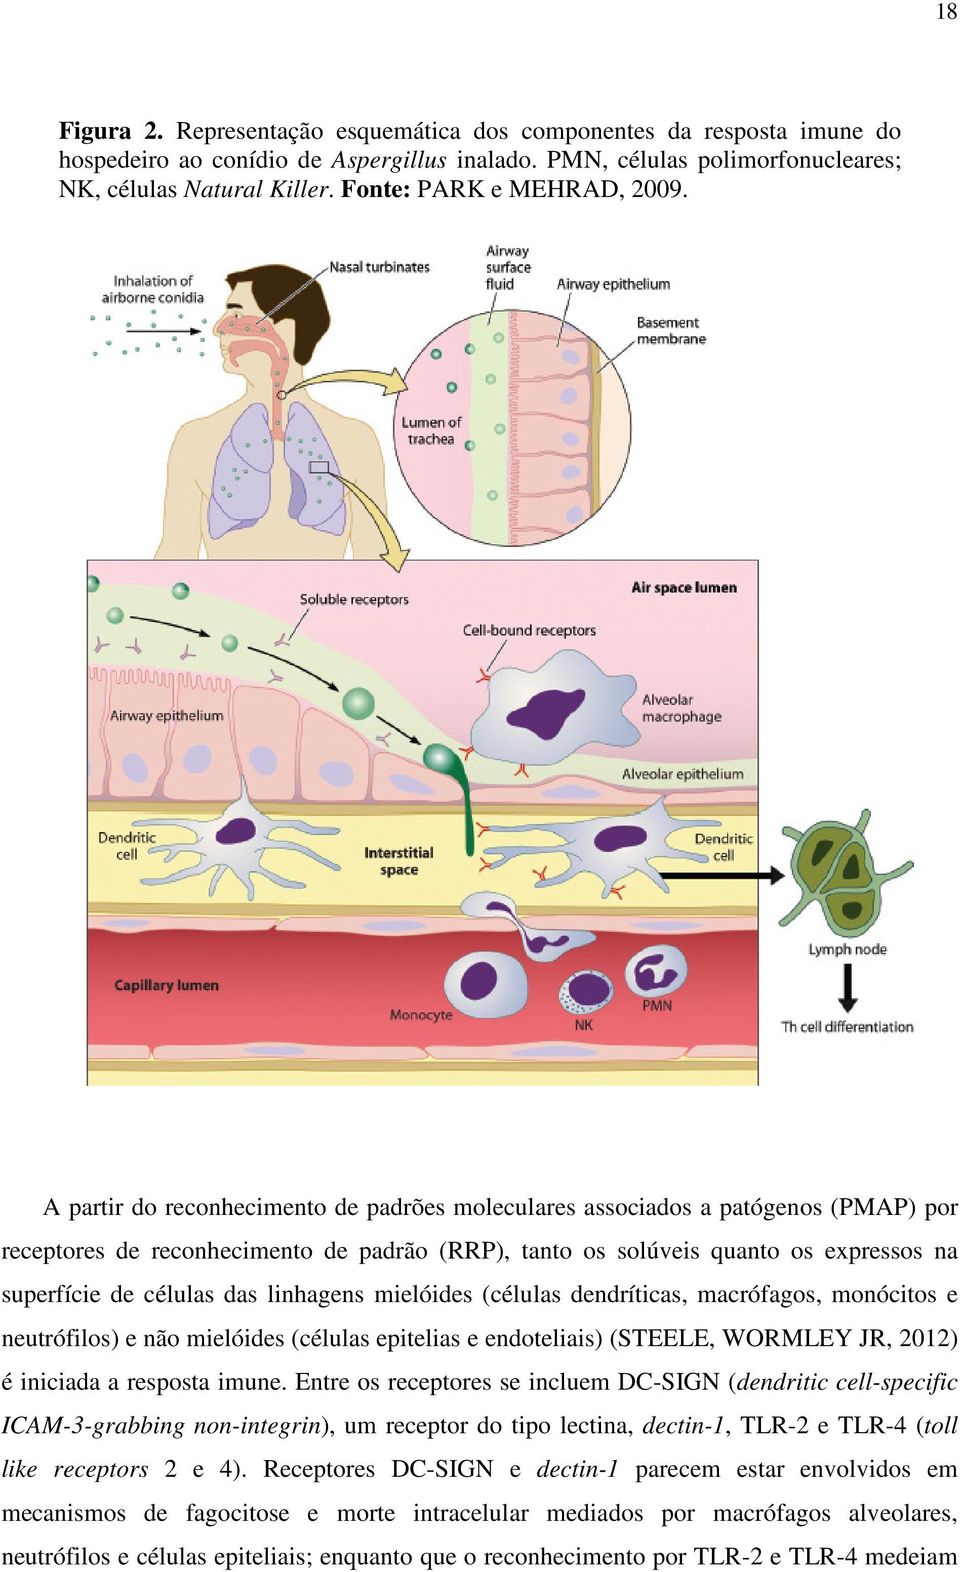 A partir do reconhecimento de padrões moleculares associados a patógenos (PMAP) por receptores de reconhecimento de padrão (RRP), tanto os solúveis quanto os expressos na superfície de células das